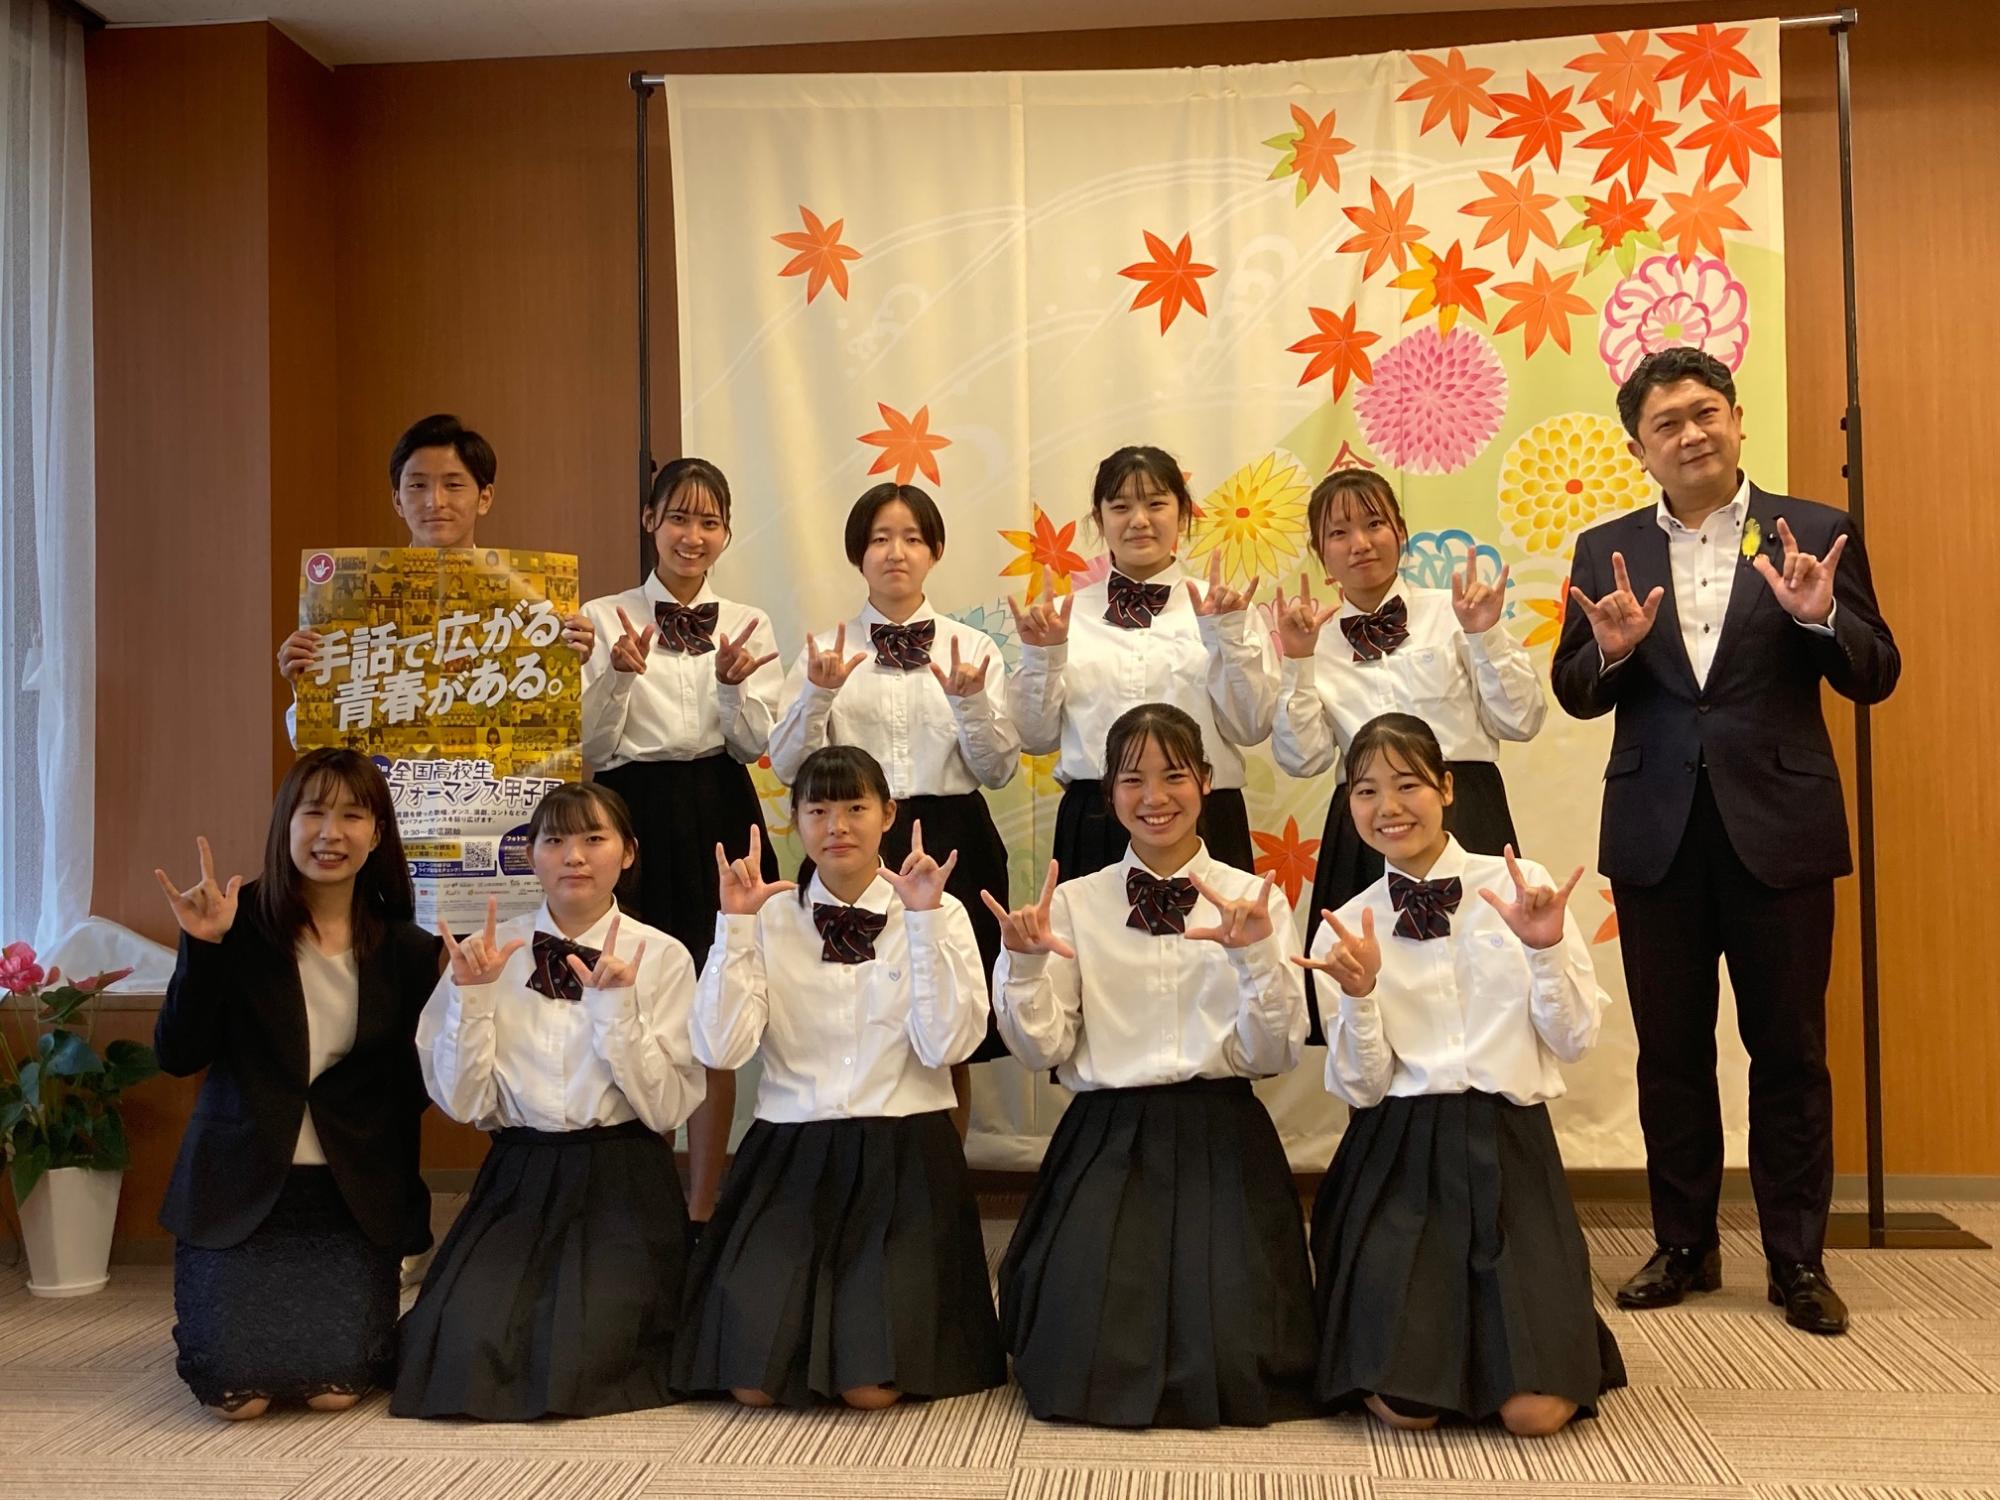 全国高校生手話パフォーマンス甲子園に出場する金沢北陵高等学校の生徒との集合写真